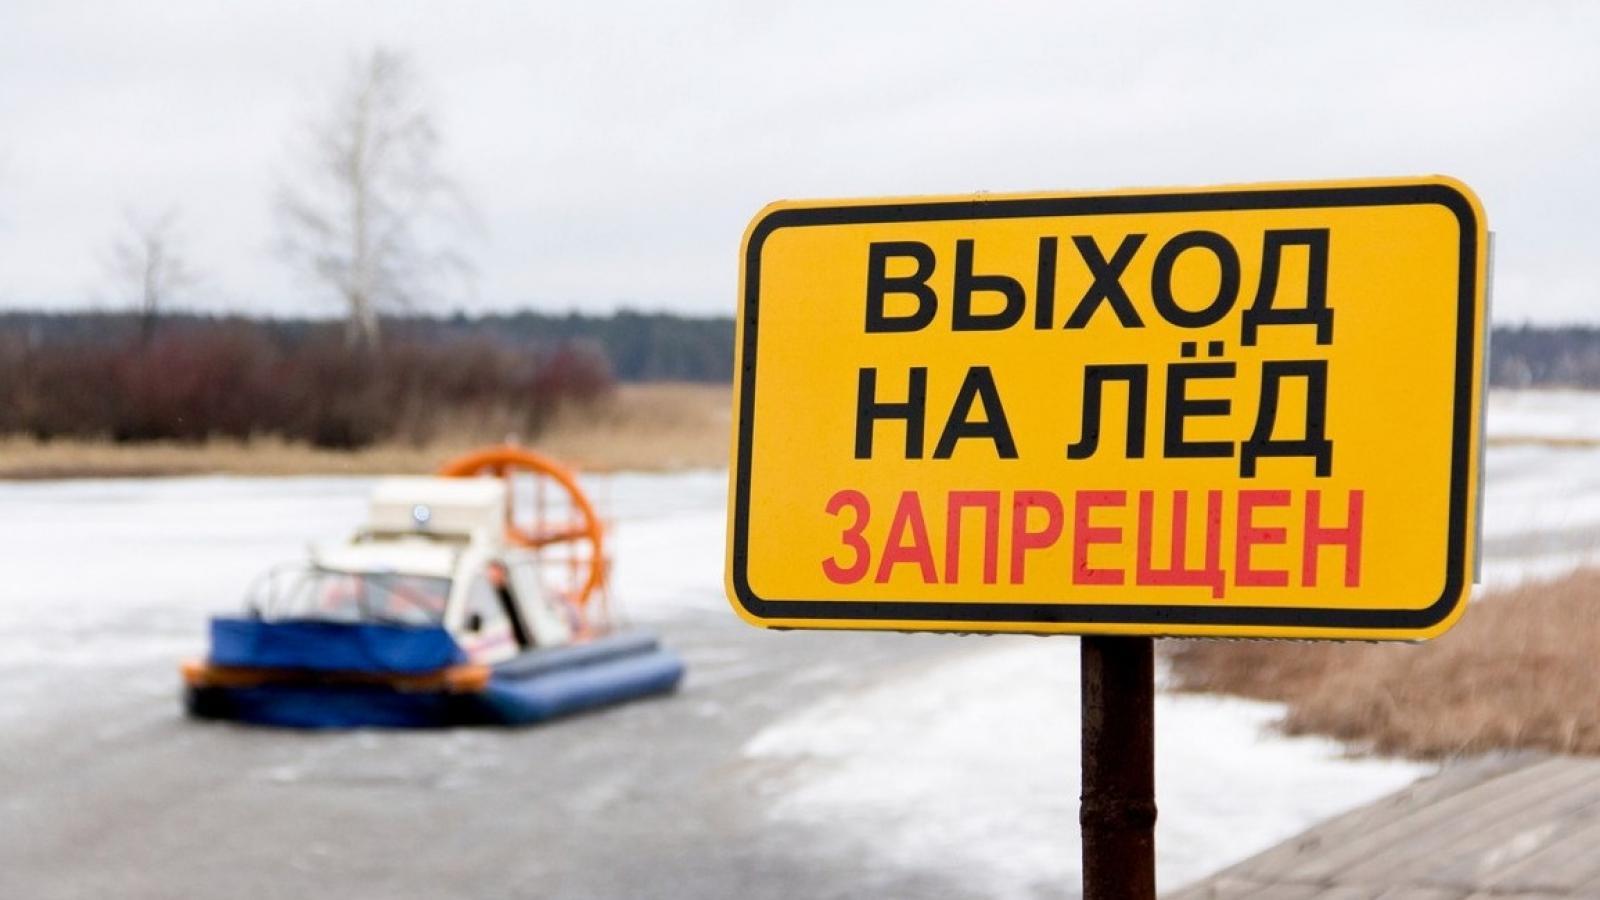 На Вологодчине начал действовать запрет выхода на лёд